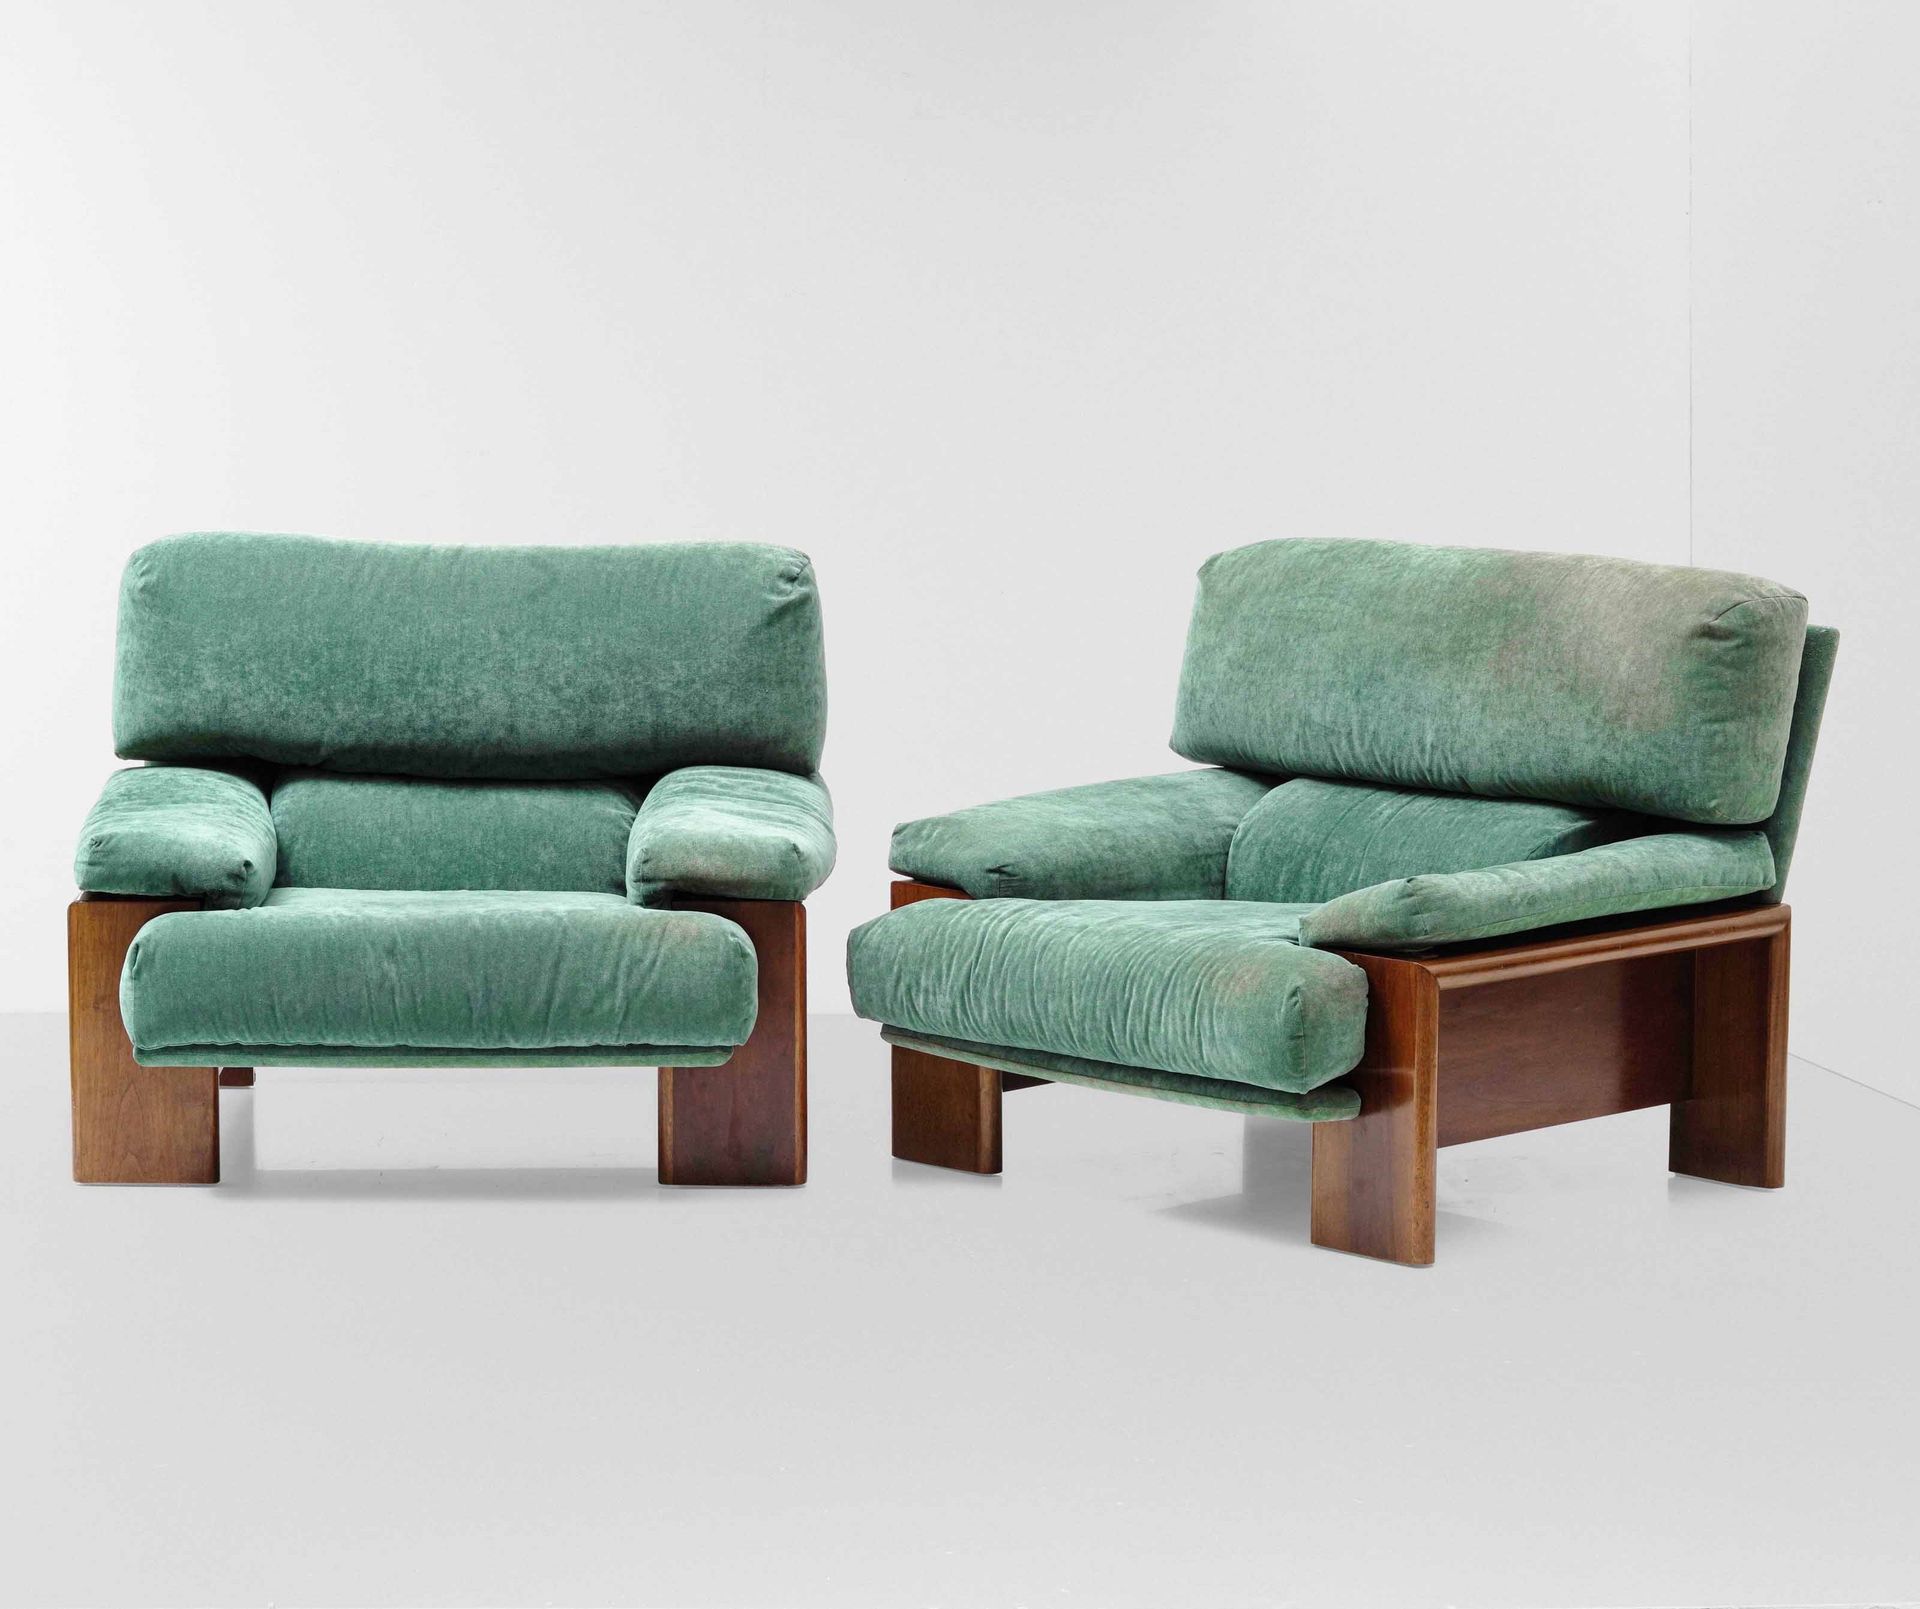 Mobilgirgi 一对扶手椅，木制框架和支架，带织物套，意大利制造，1970年，宽100 - 长100 - 高84厘米。